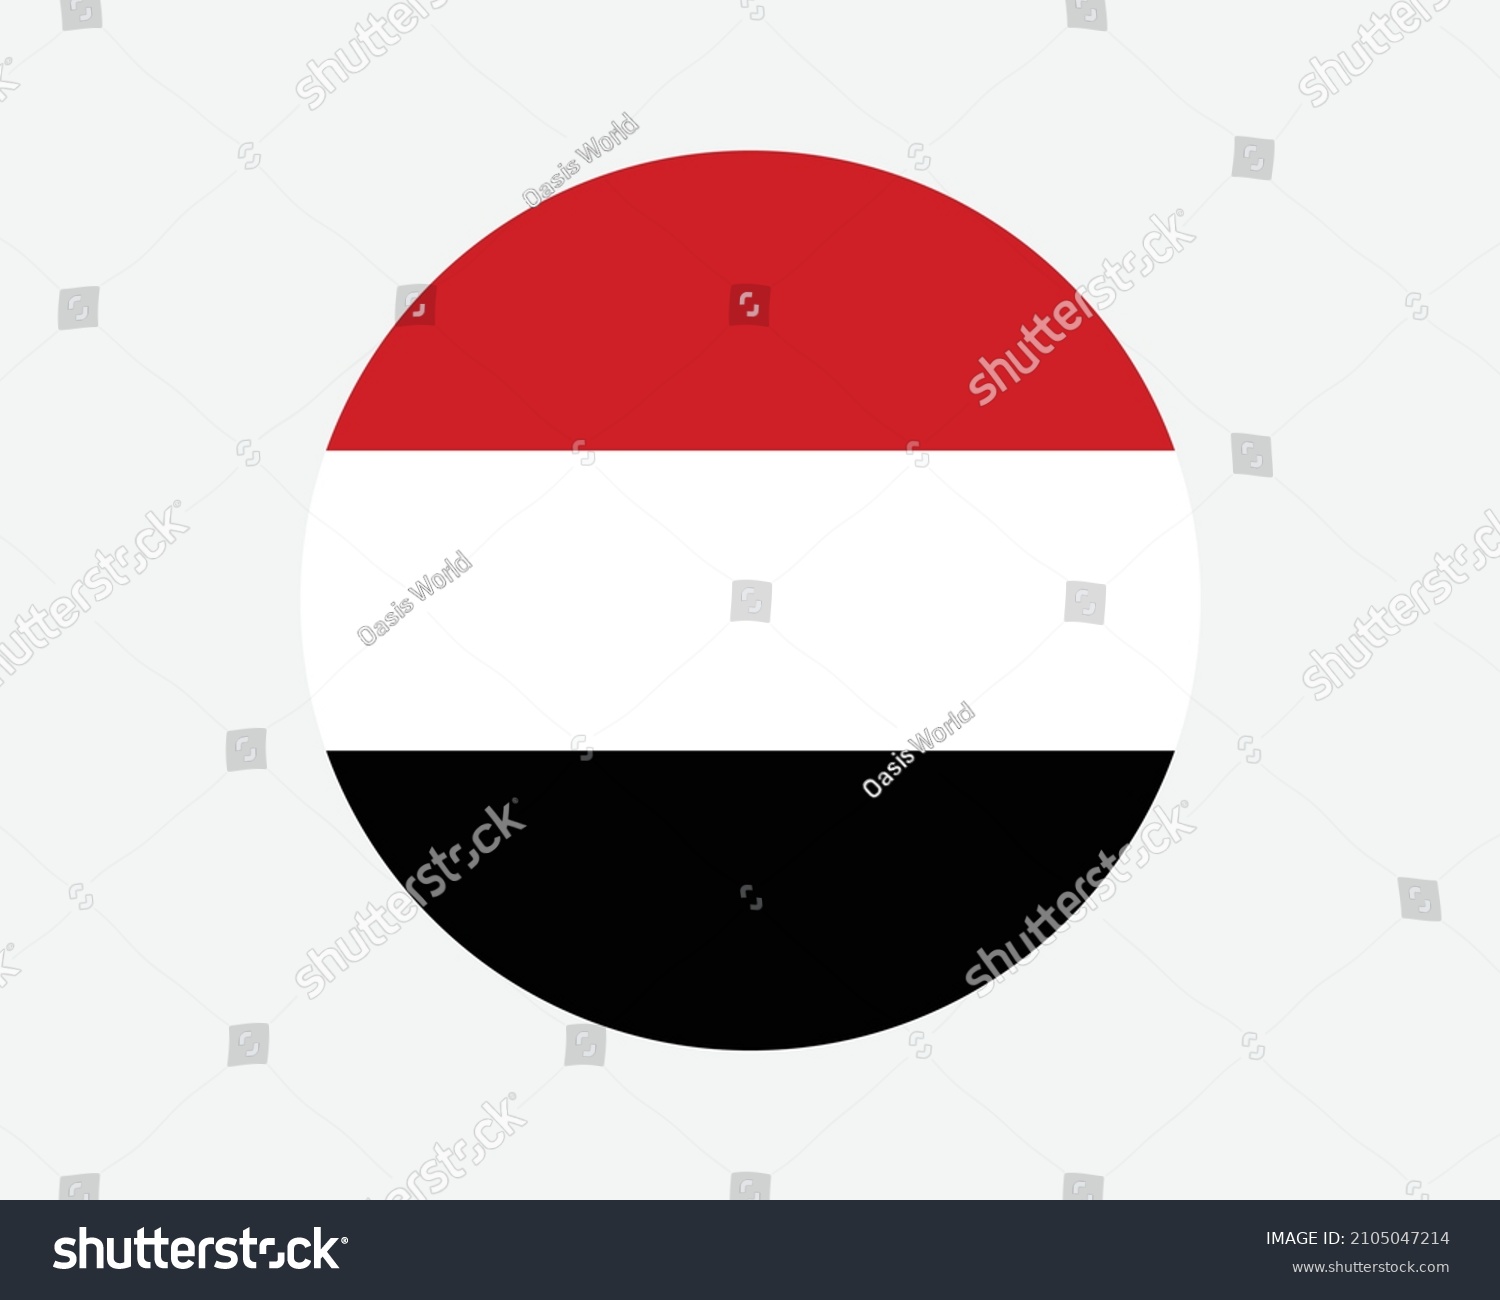 Yemen Round Country Flag Yemeni Yemenite Stock Vector Royalty Free 2105047214 Shutterstock 